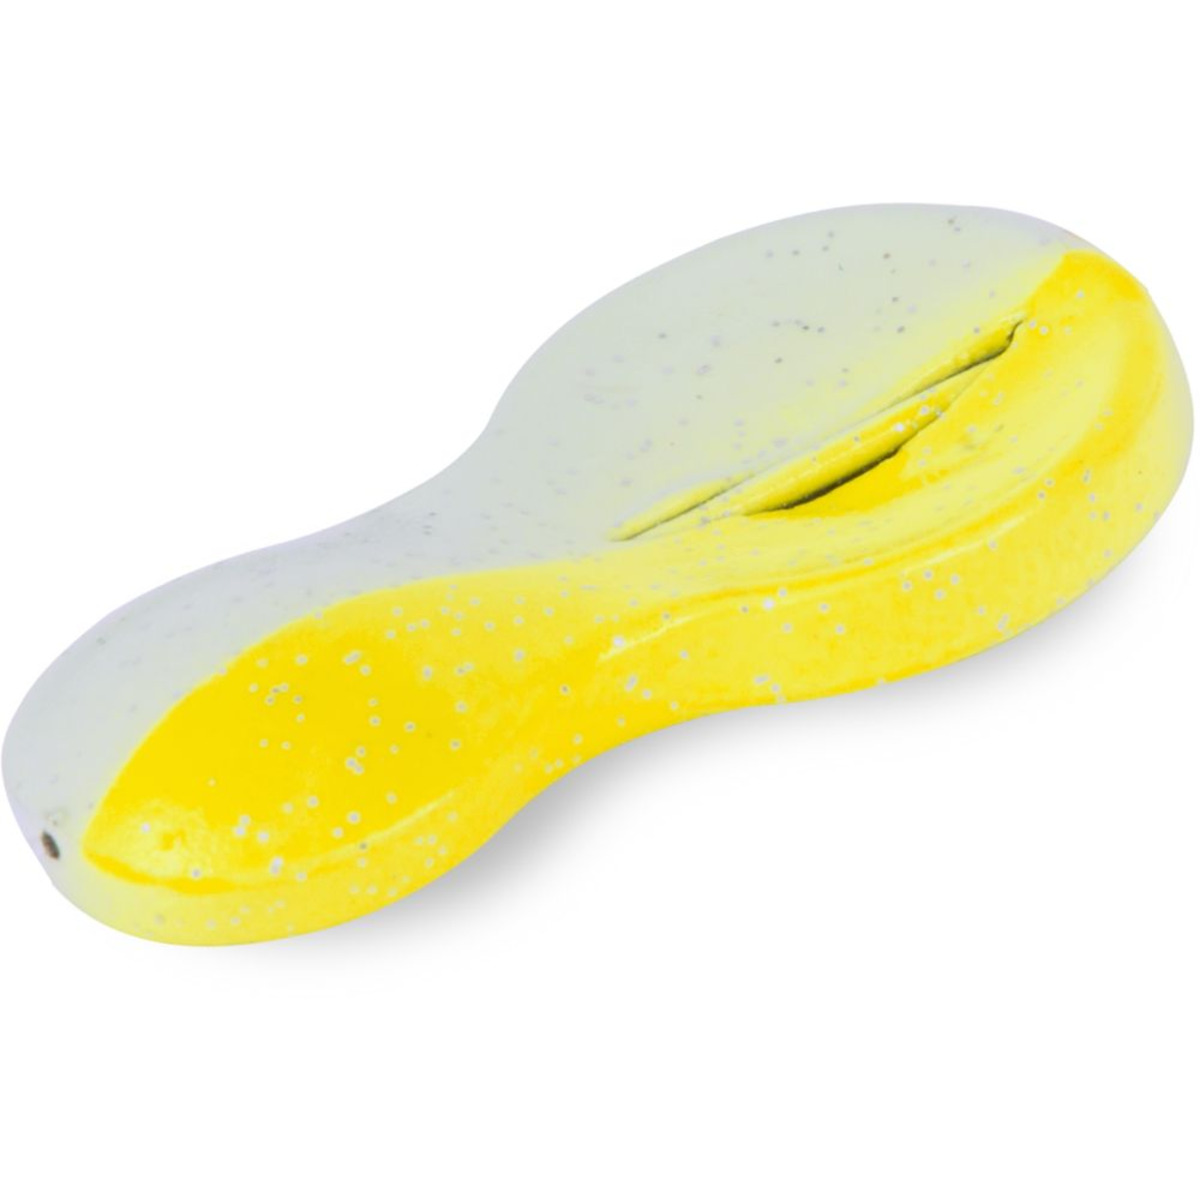 Zebco Z-sea Flatty Teaser Inline, Lead Free - 30 g - yellow/glow in the dark